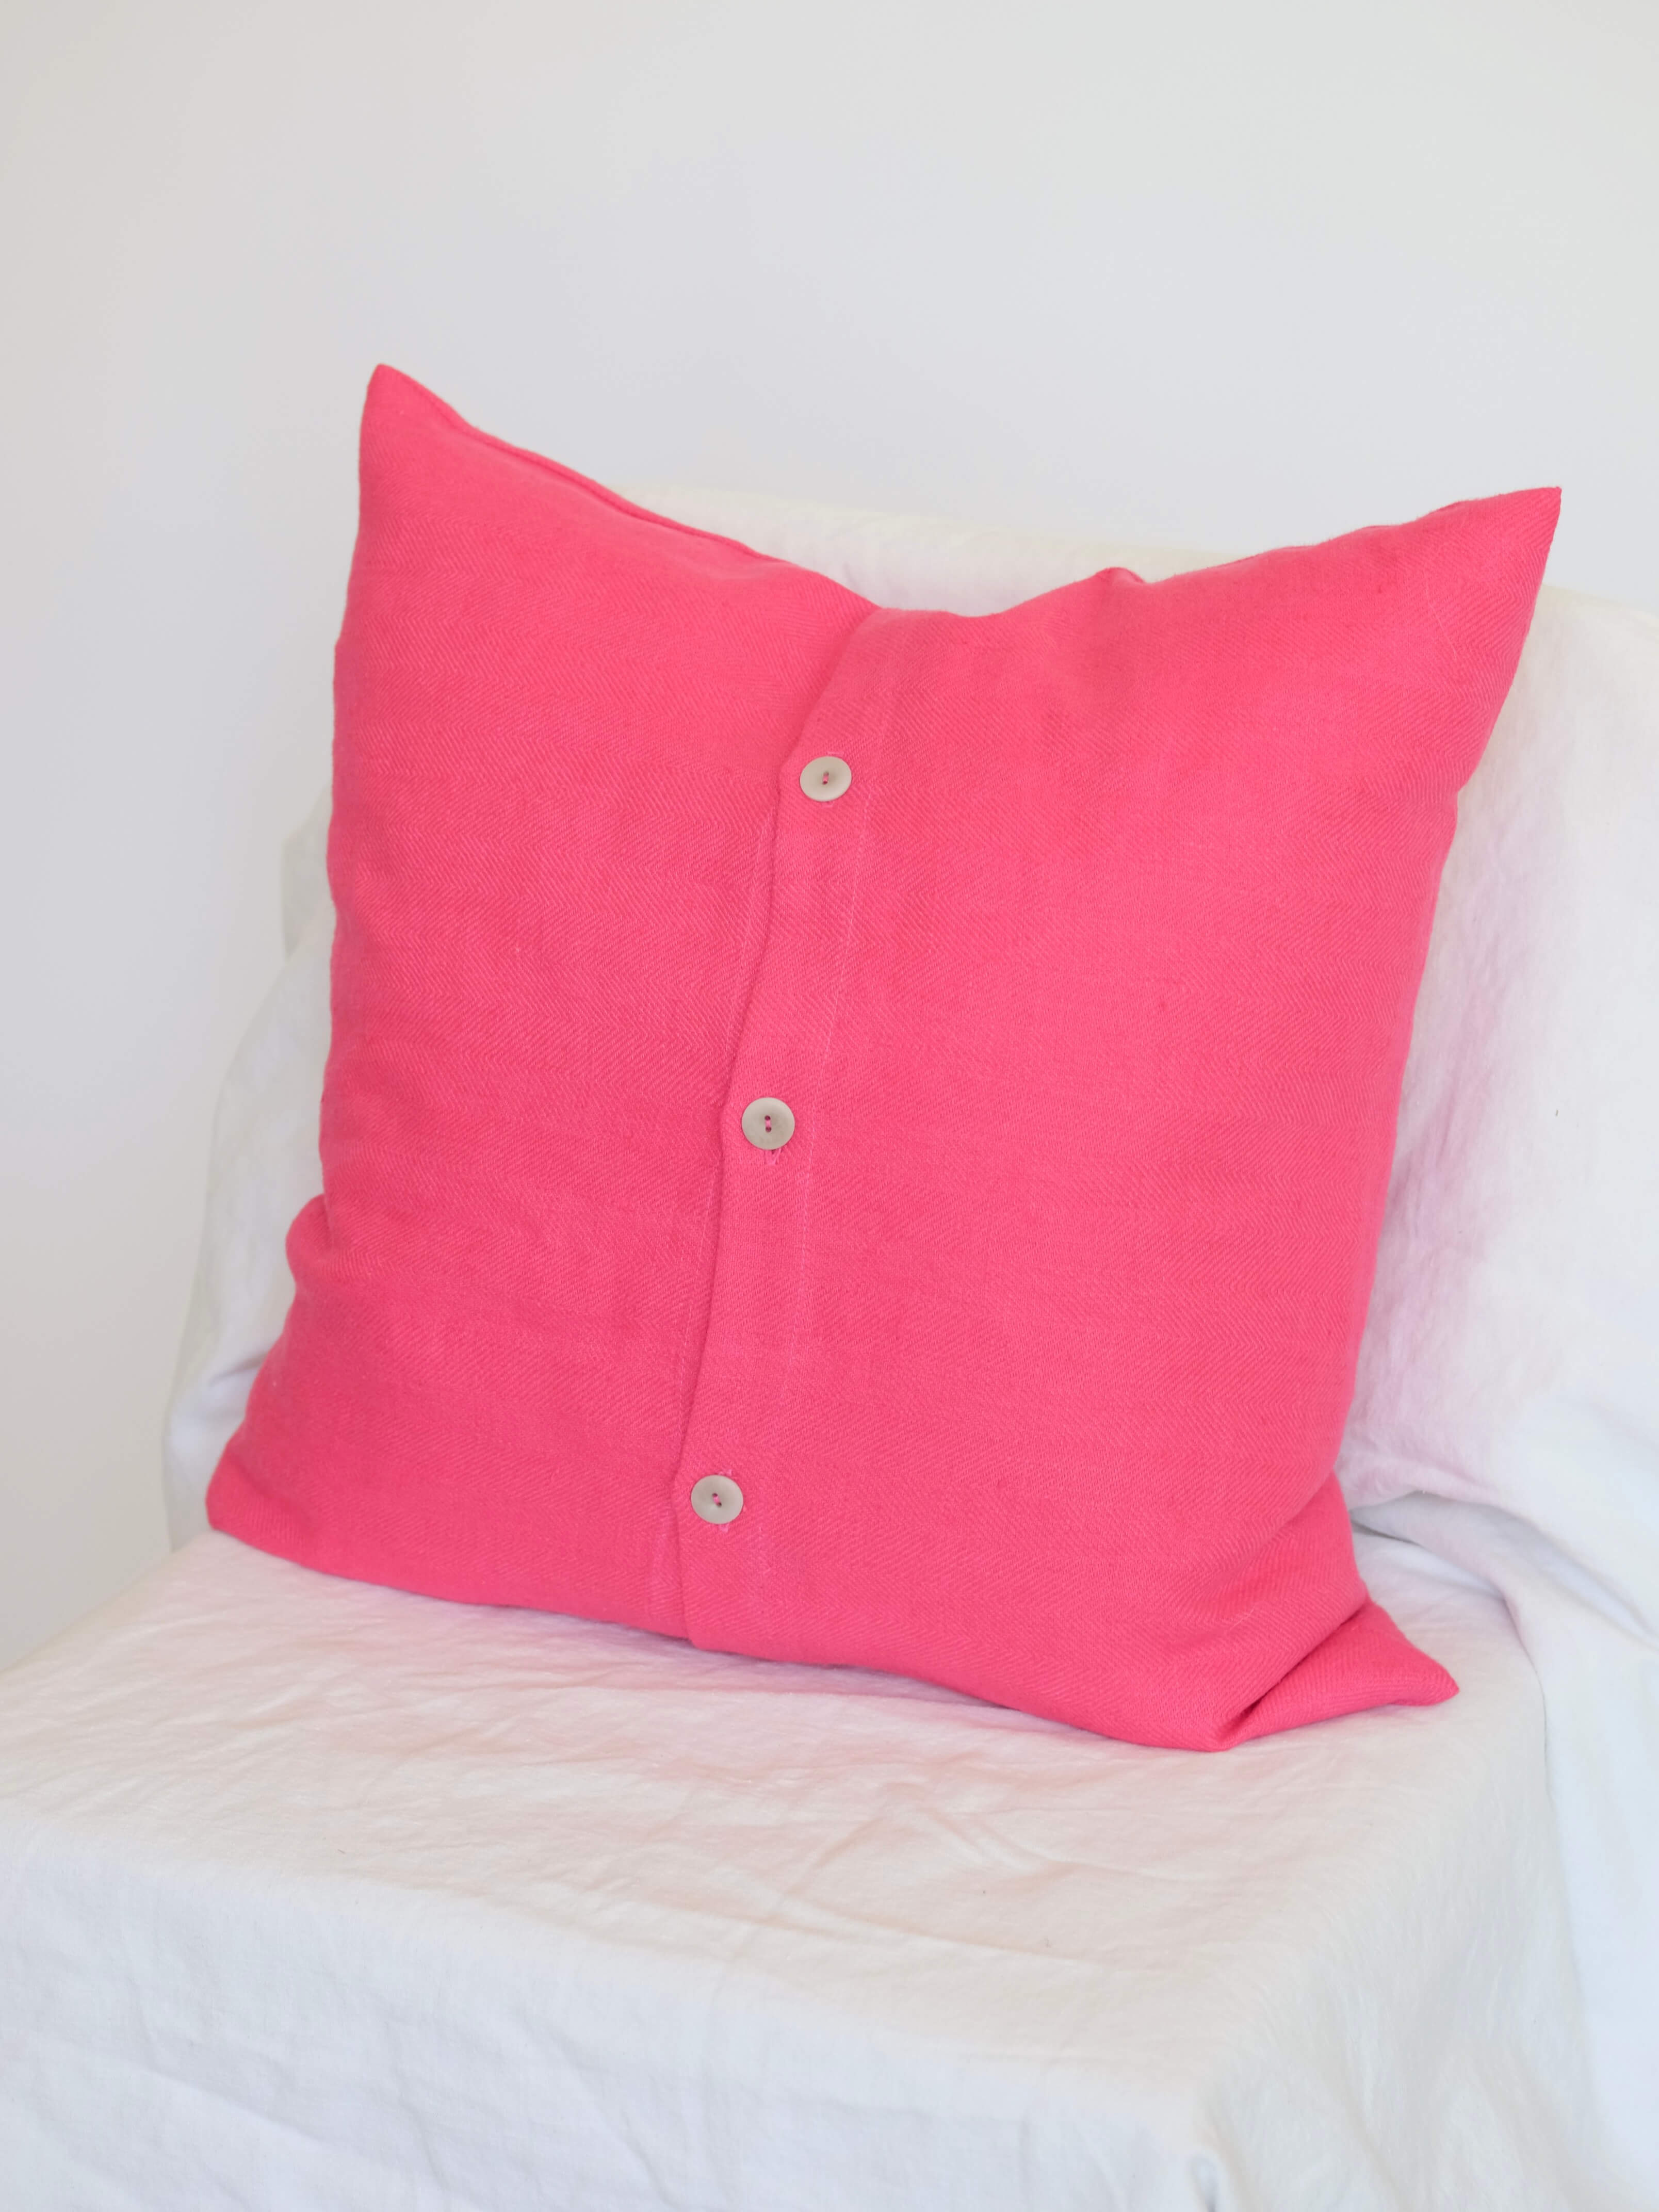 Linen Pillow in Hot Pink